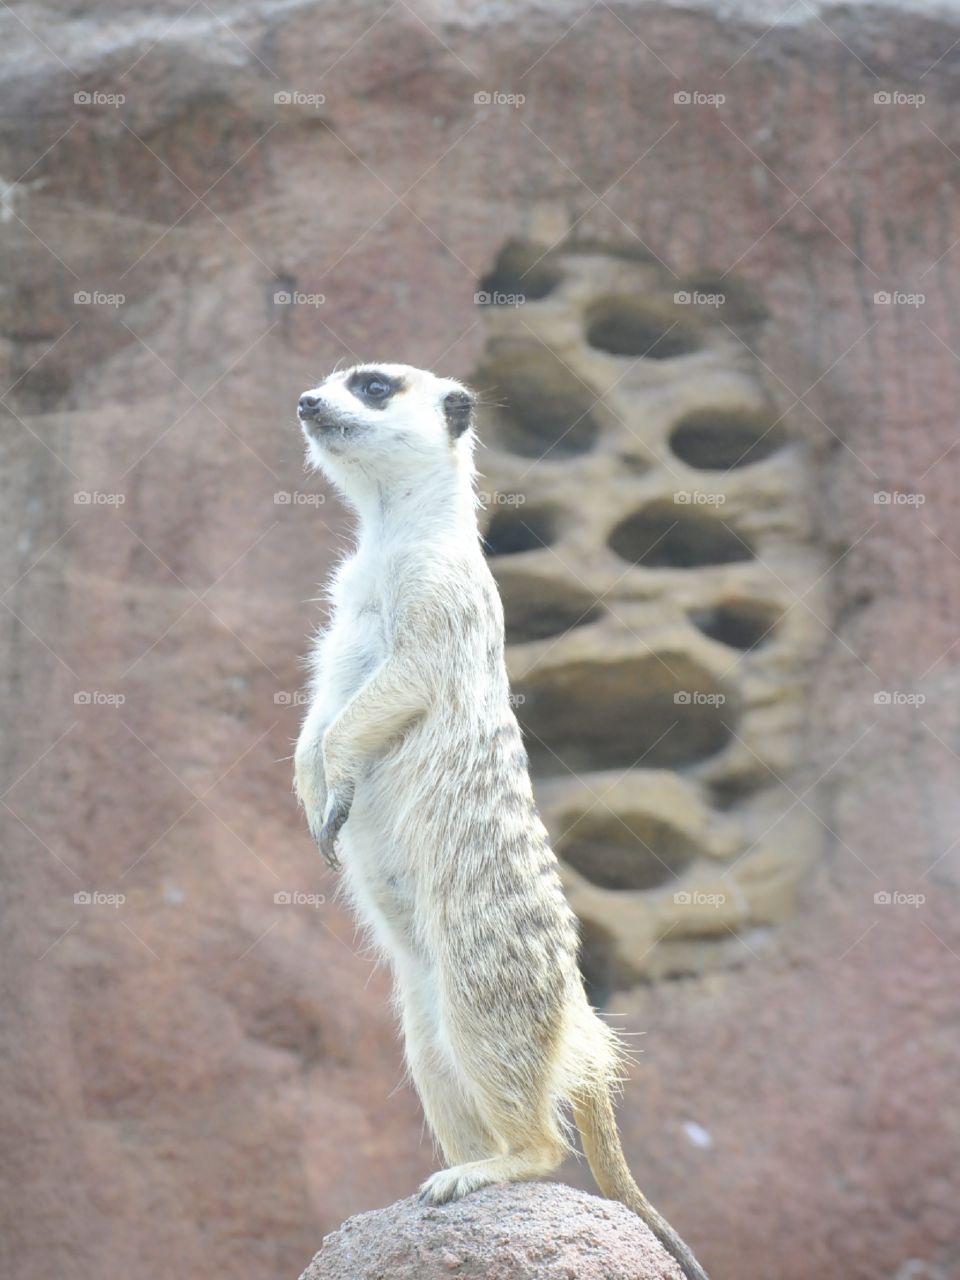 Meerkat standing guard.